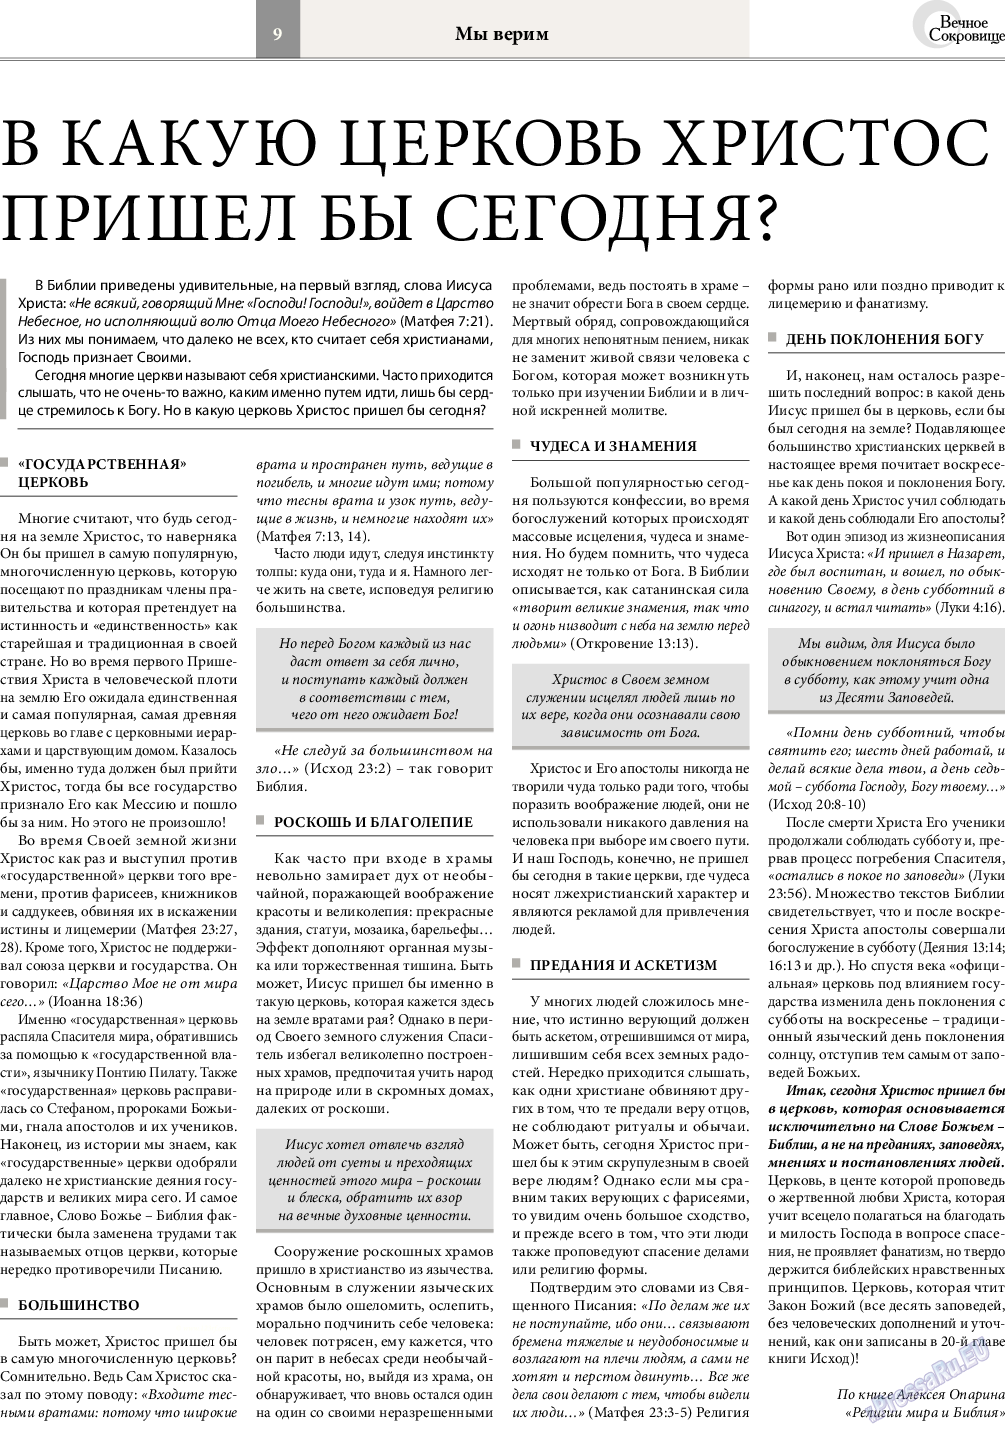 Вечное сокровище, газета. 2017 №1 стр.9